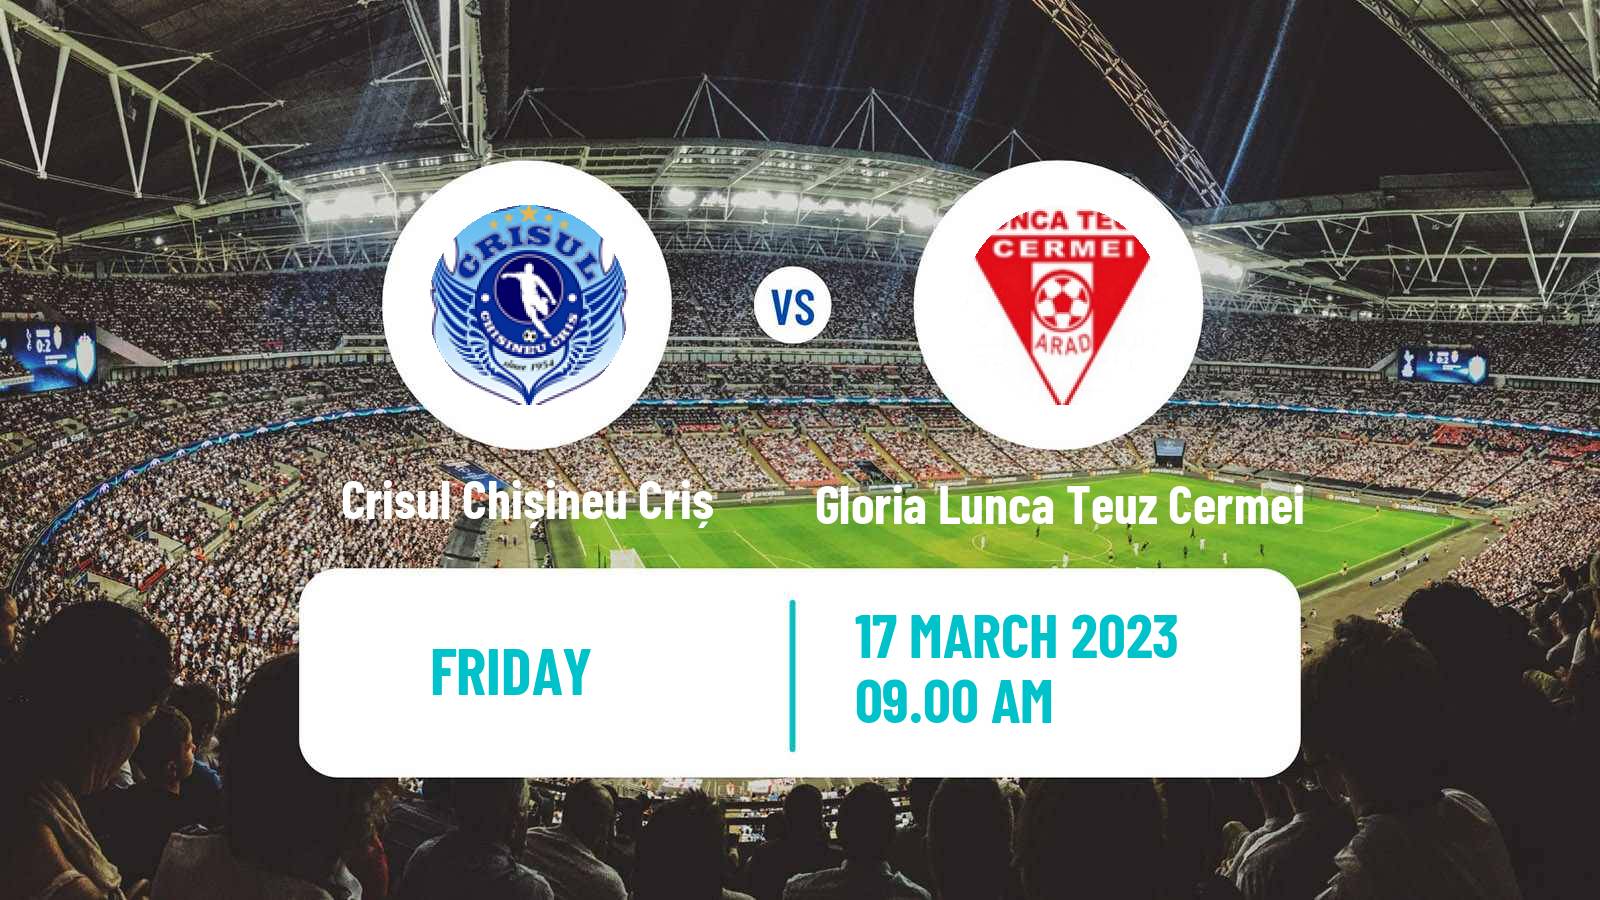 Soccer Romanian Liga 3 - Seria 8 Crisul Chișineu Criș - Gloria Lunca Teuz Cermei